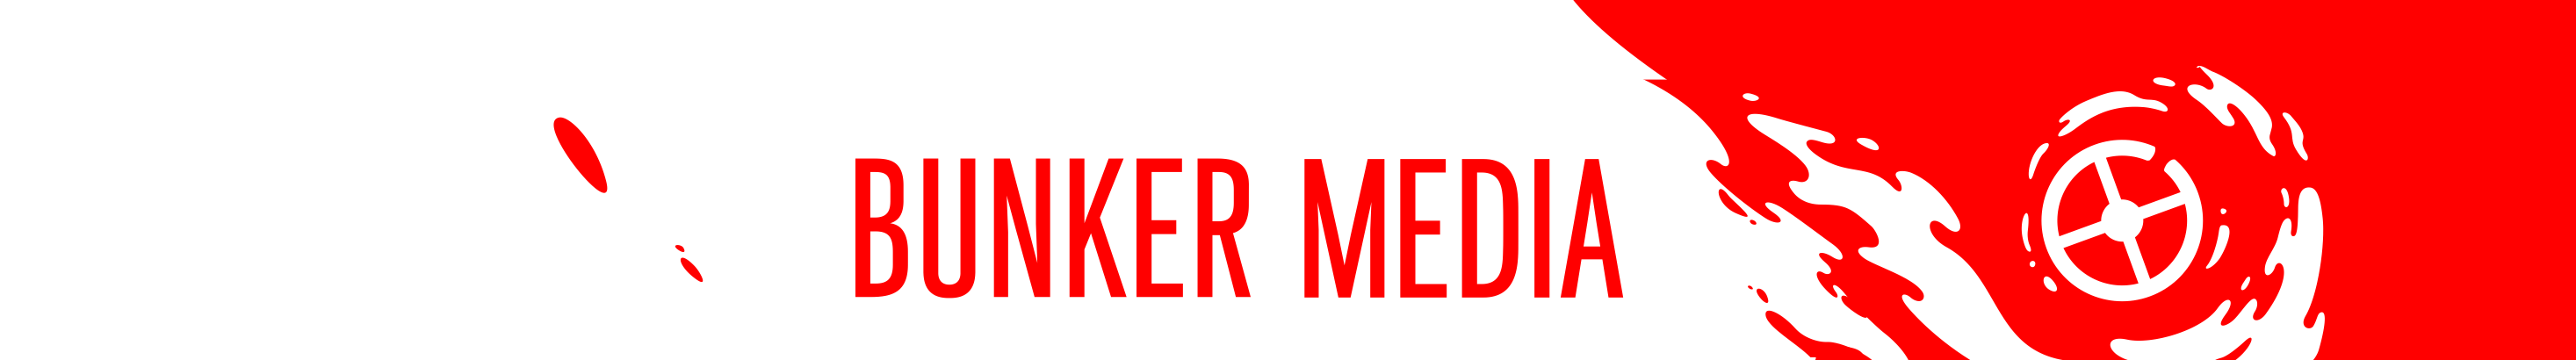 Bunker Media's profile banner